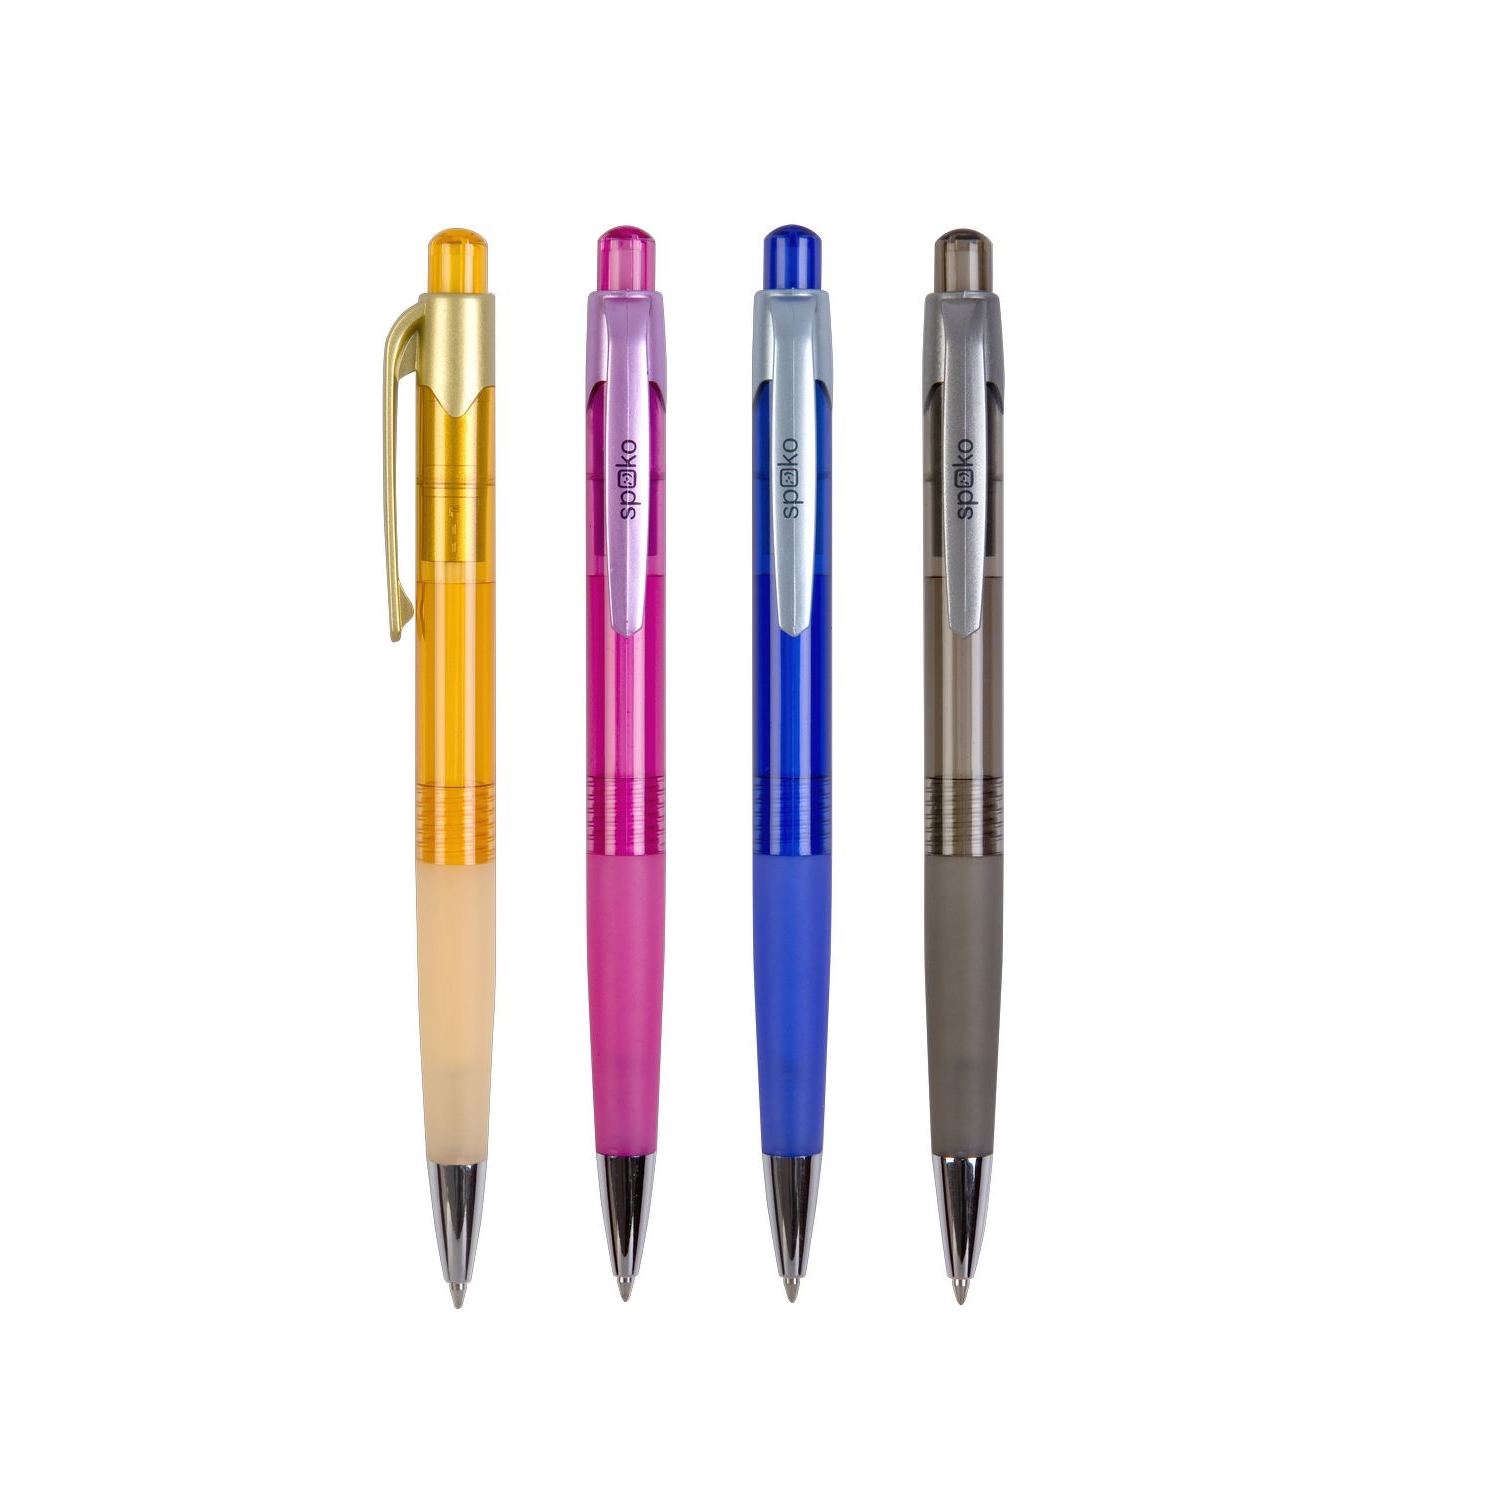 Kuličkové pero Spoko S011298, průhledné, modrá náplň, mix barev